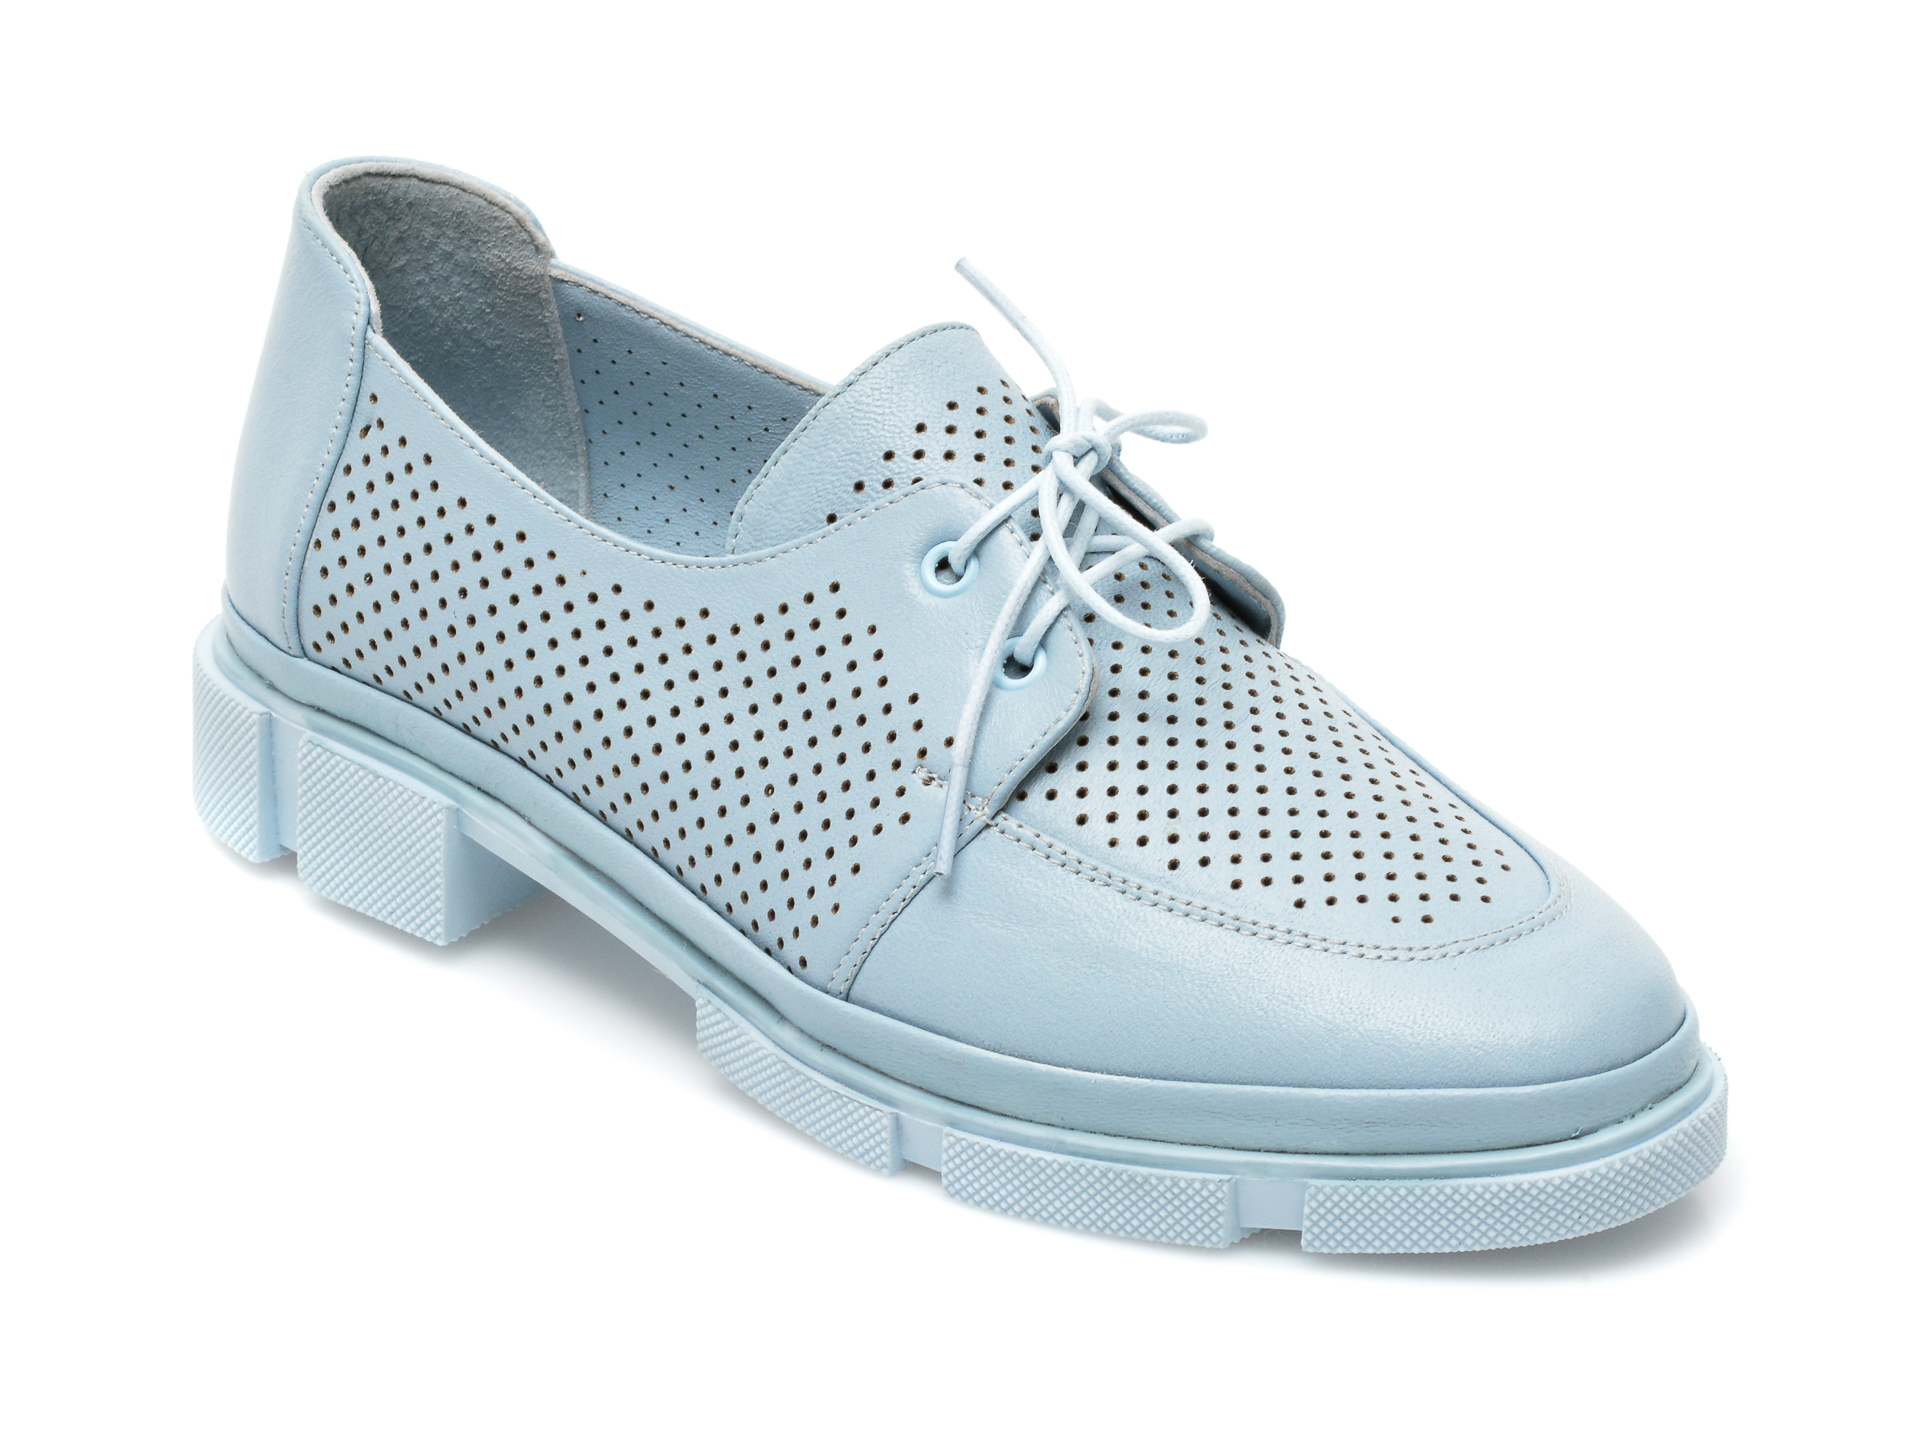 Pantofi ENTERSA albastri, MN107, din piele naturala ENTERSA